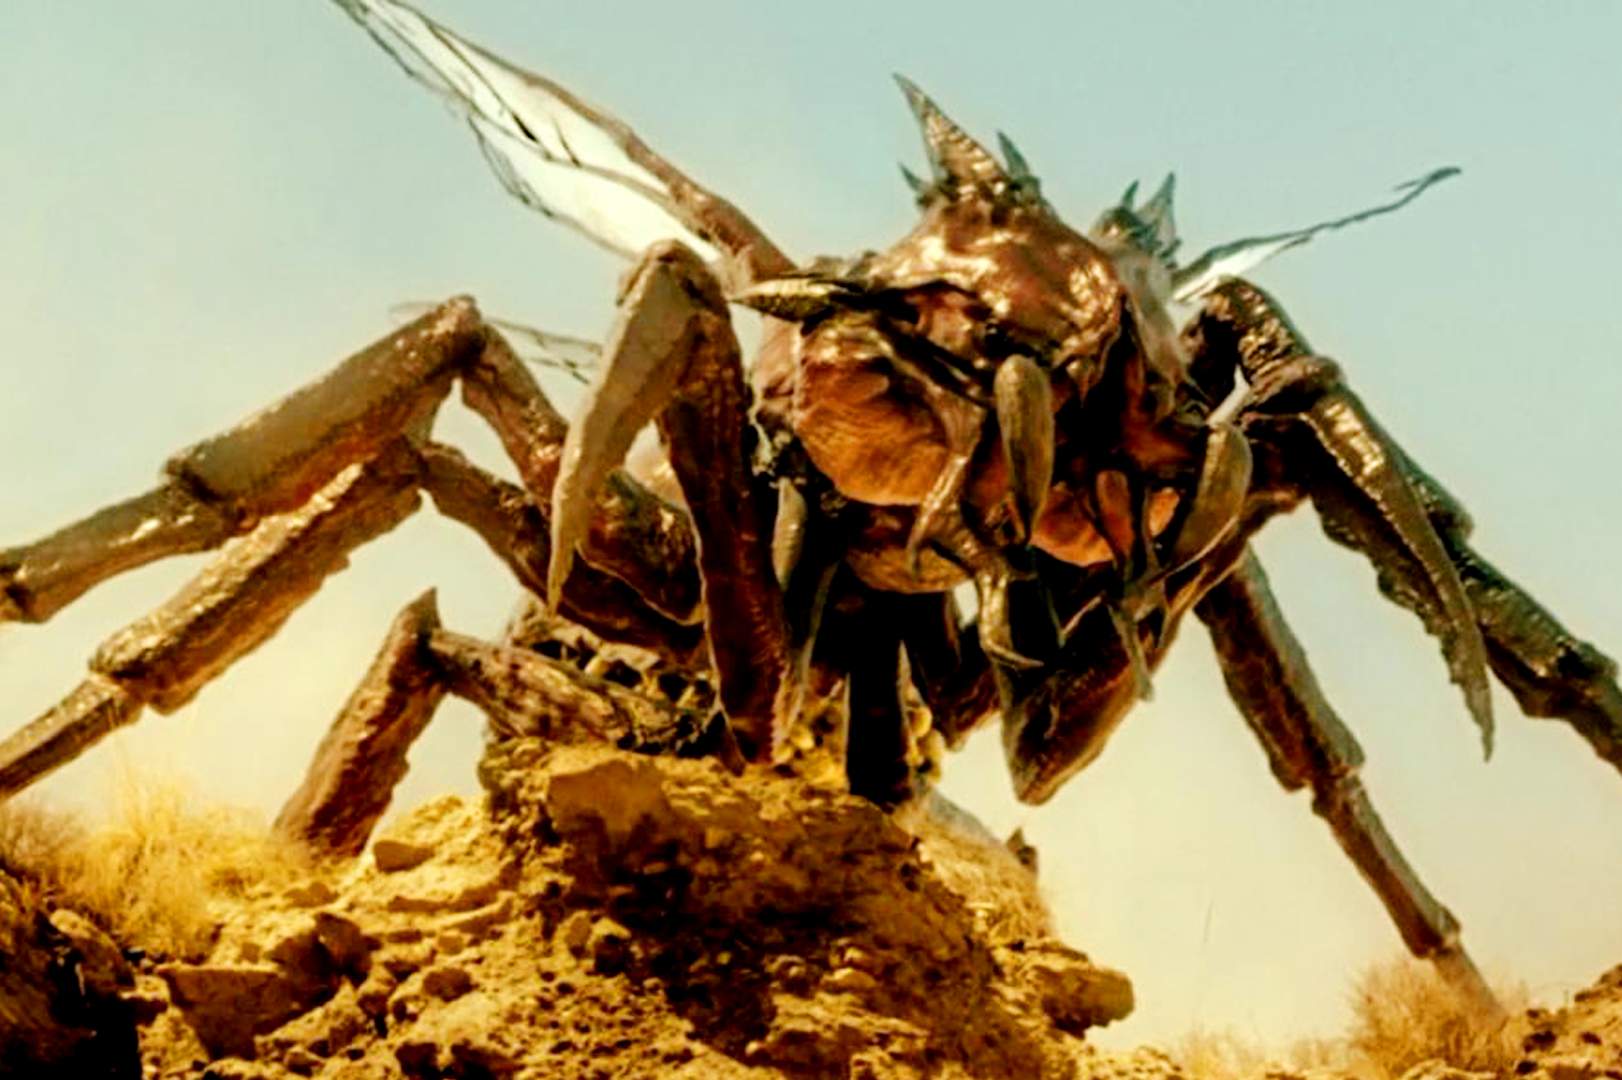 人类培养出变异蚂蚁,却不料蚂蚁冲破基地逃了出来,一部经典科幻片